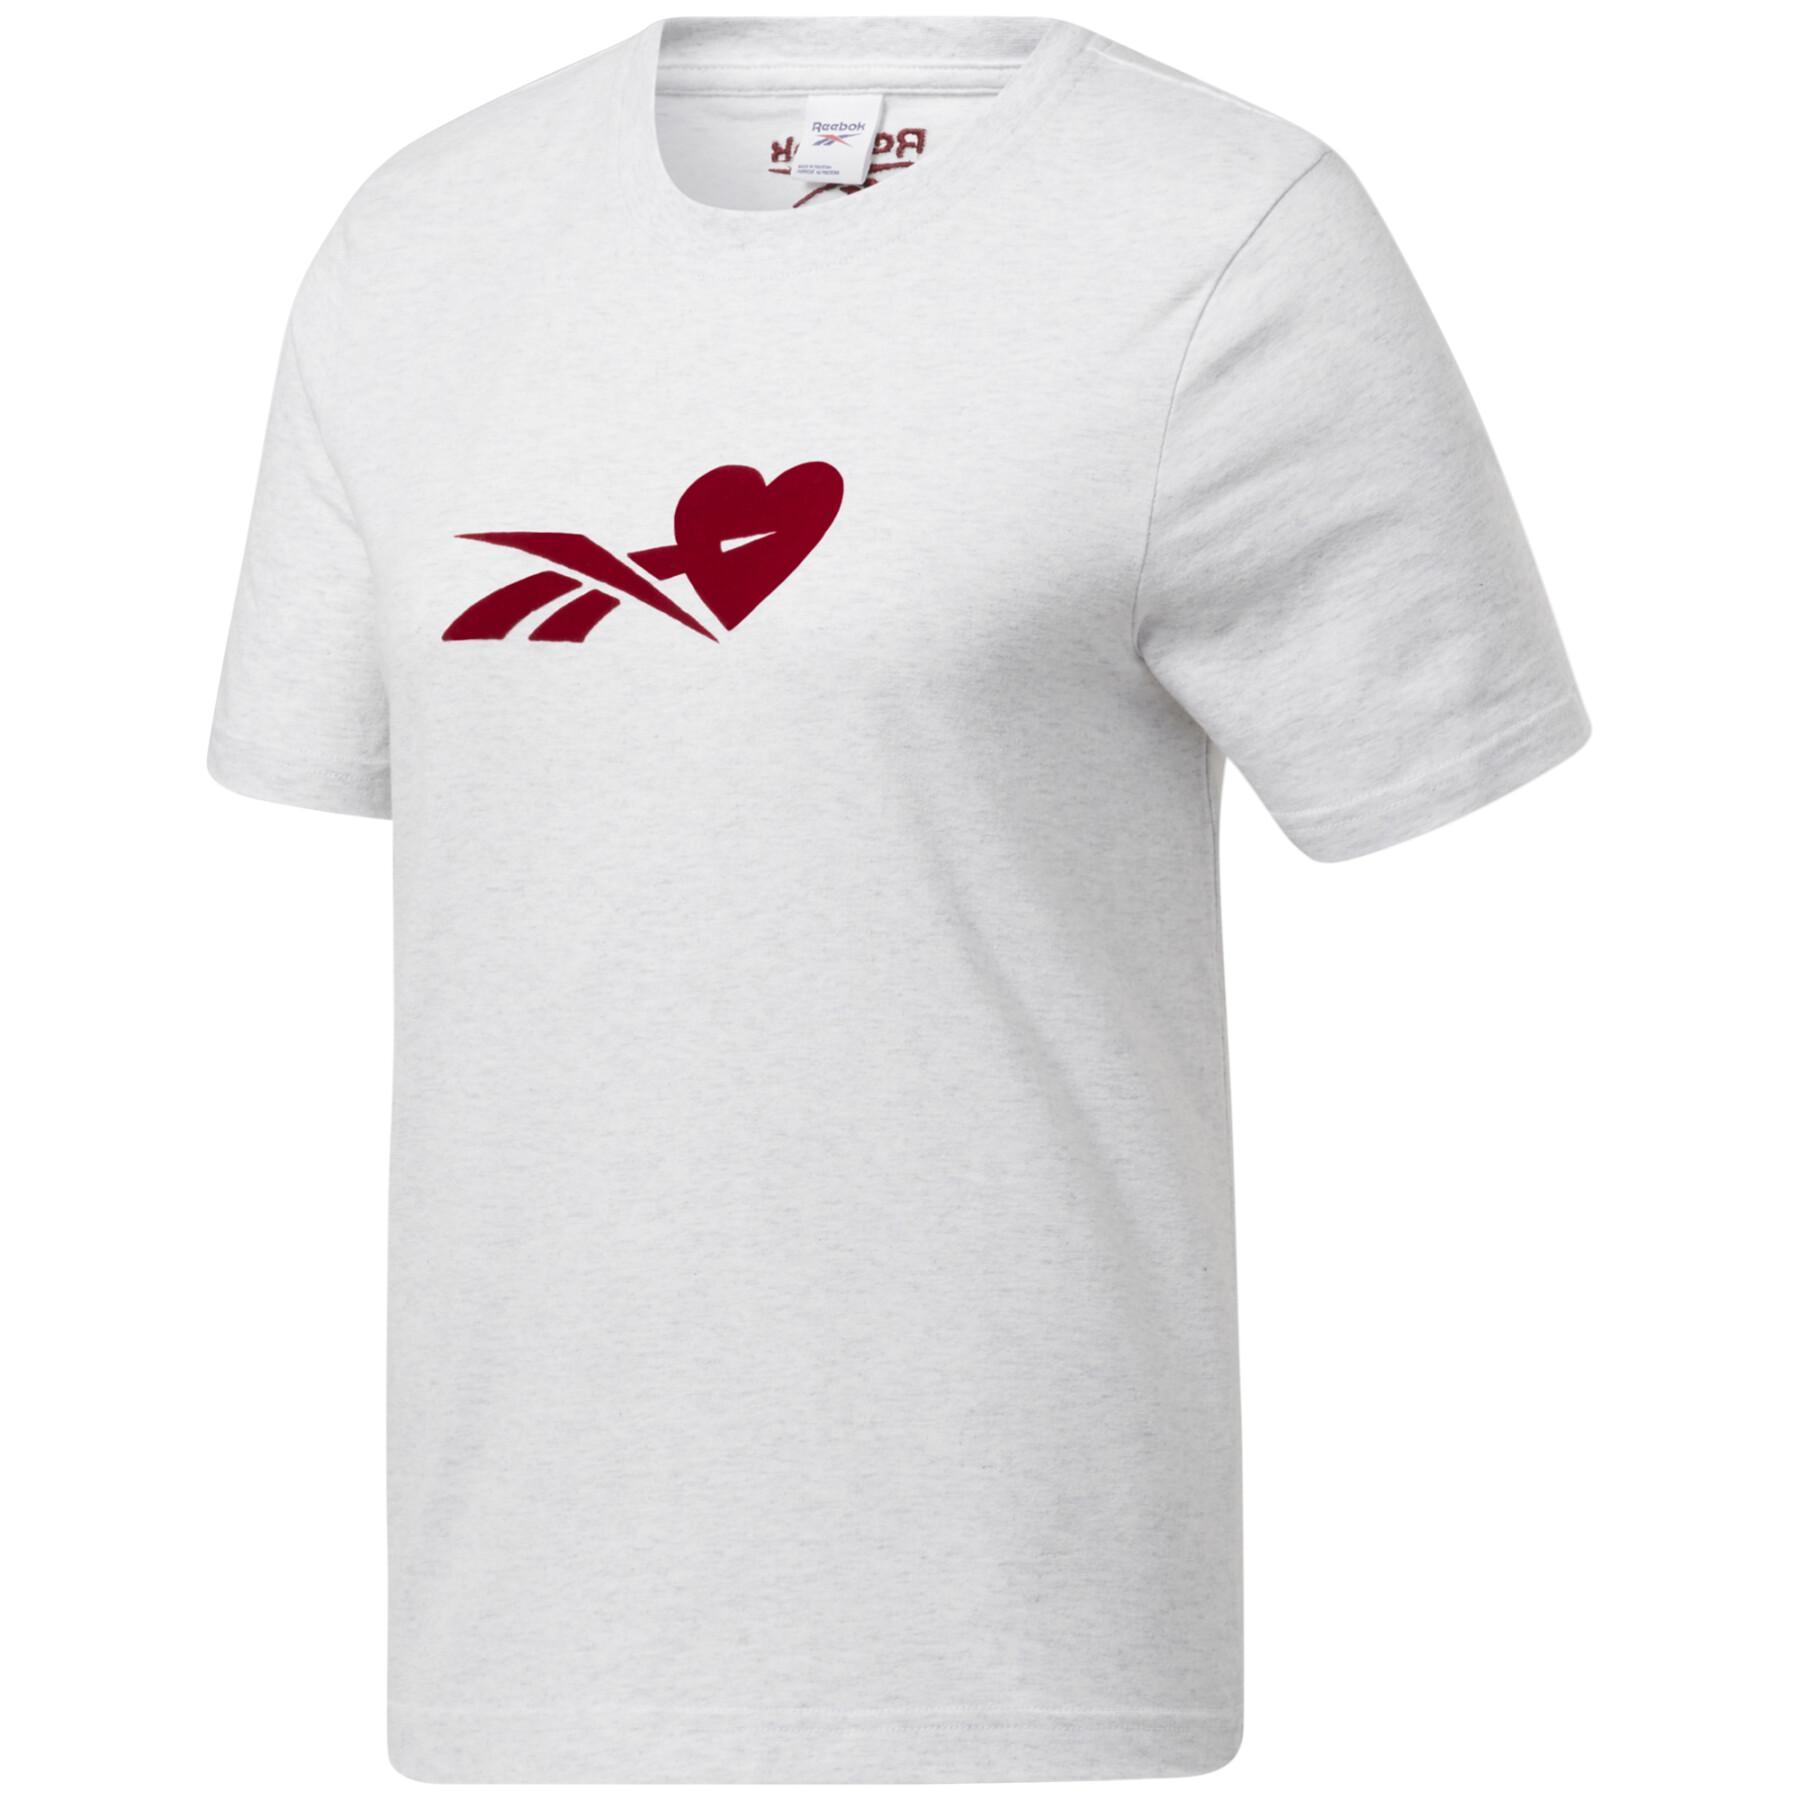 Women's T-shirt Reebok Valentine Graphic